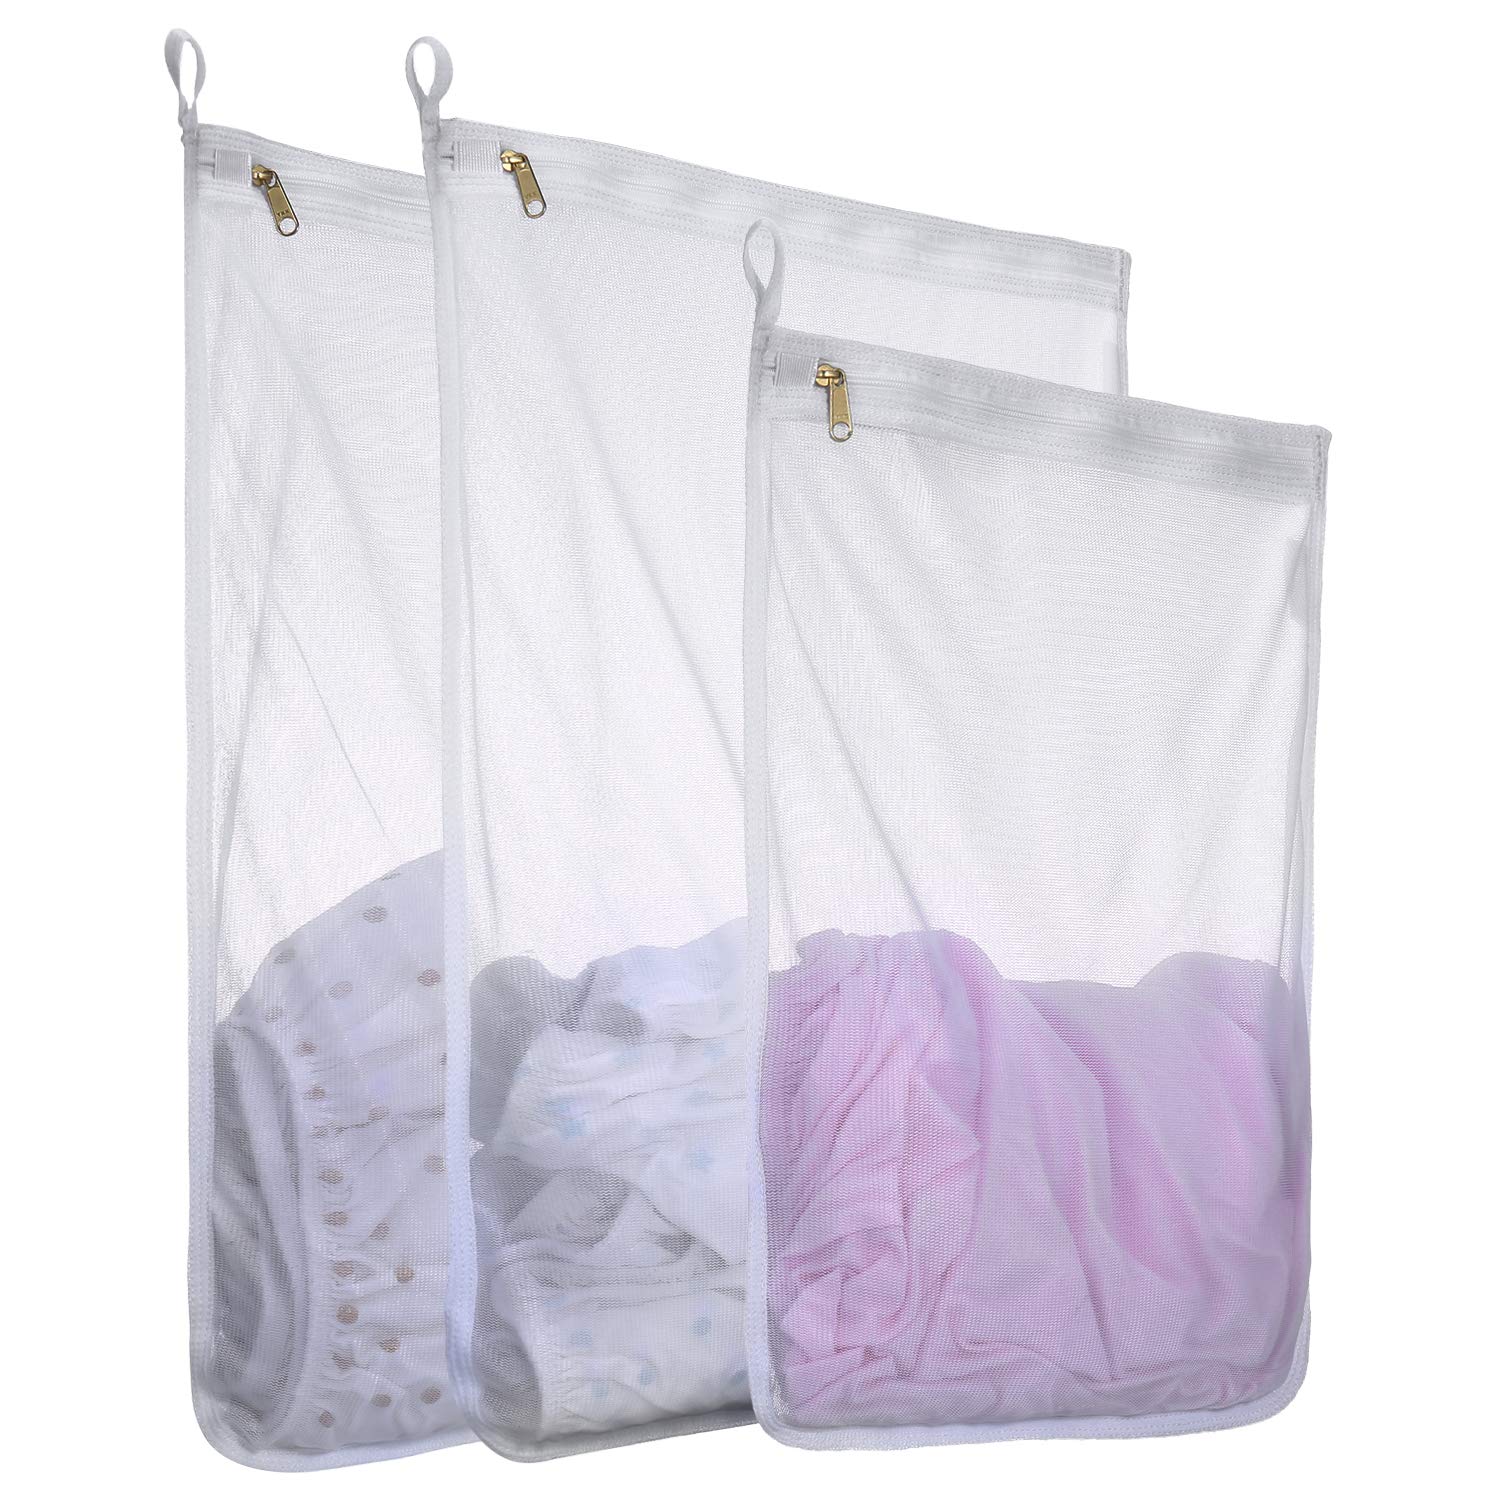 3 Jumbo Laundry Bag Clothes Hamper Nylon Heavy Duty 28